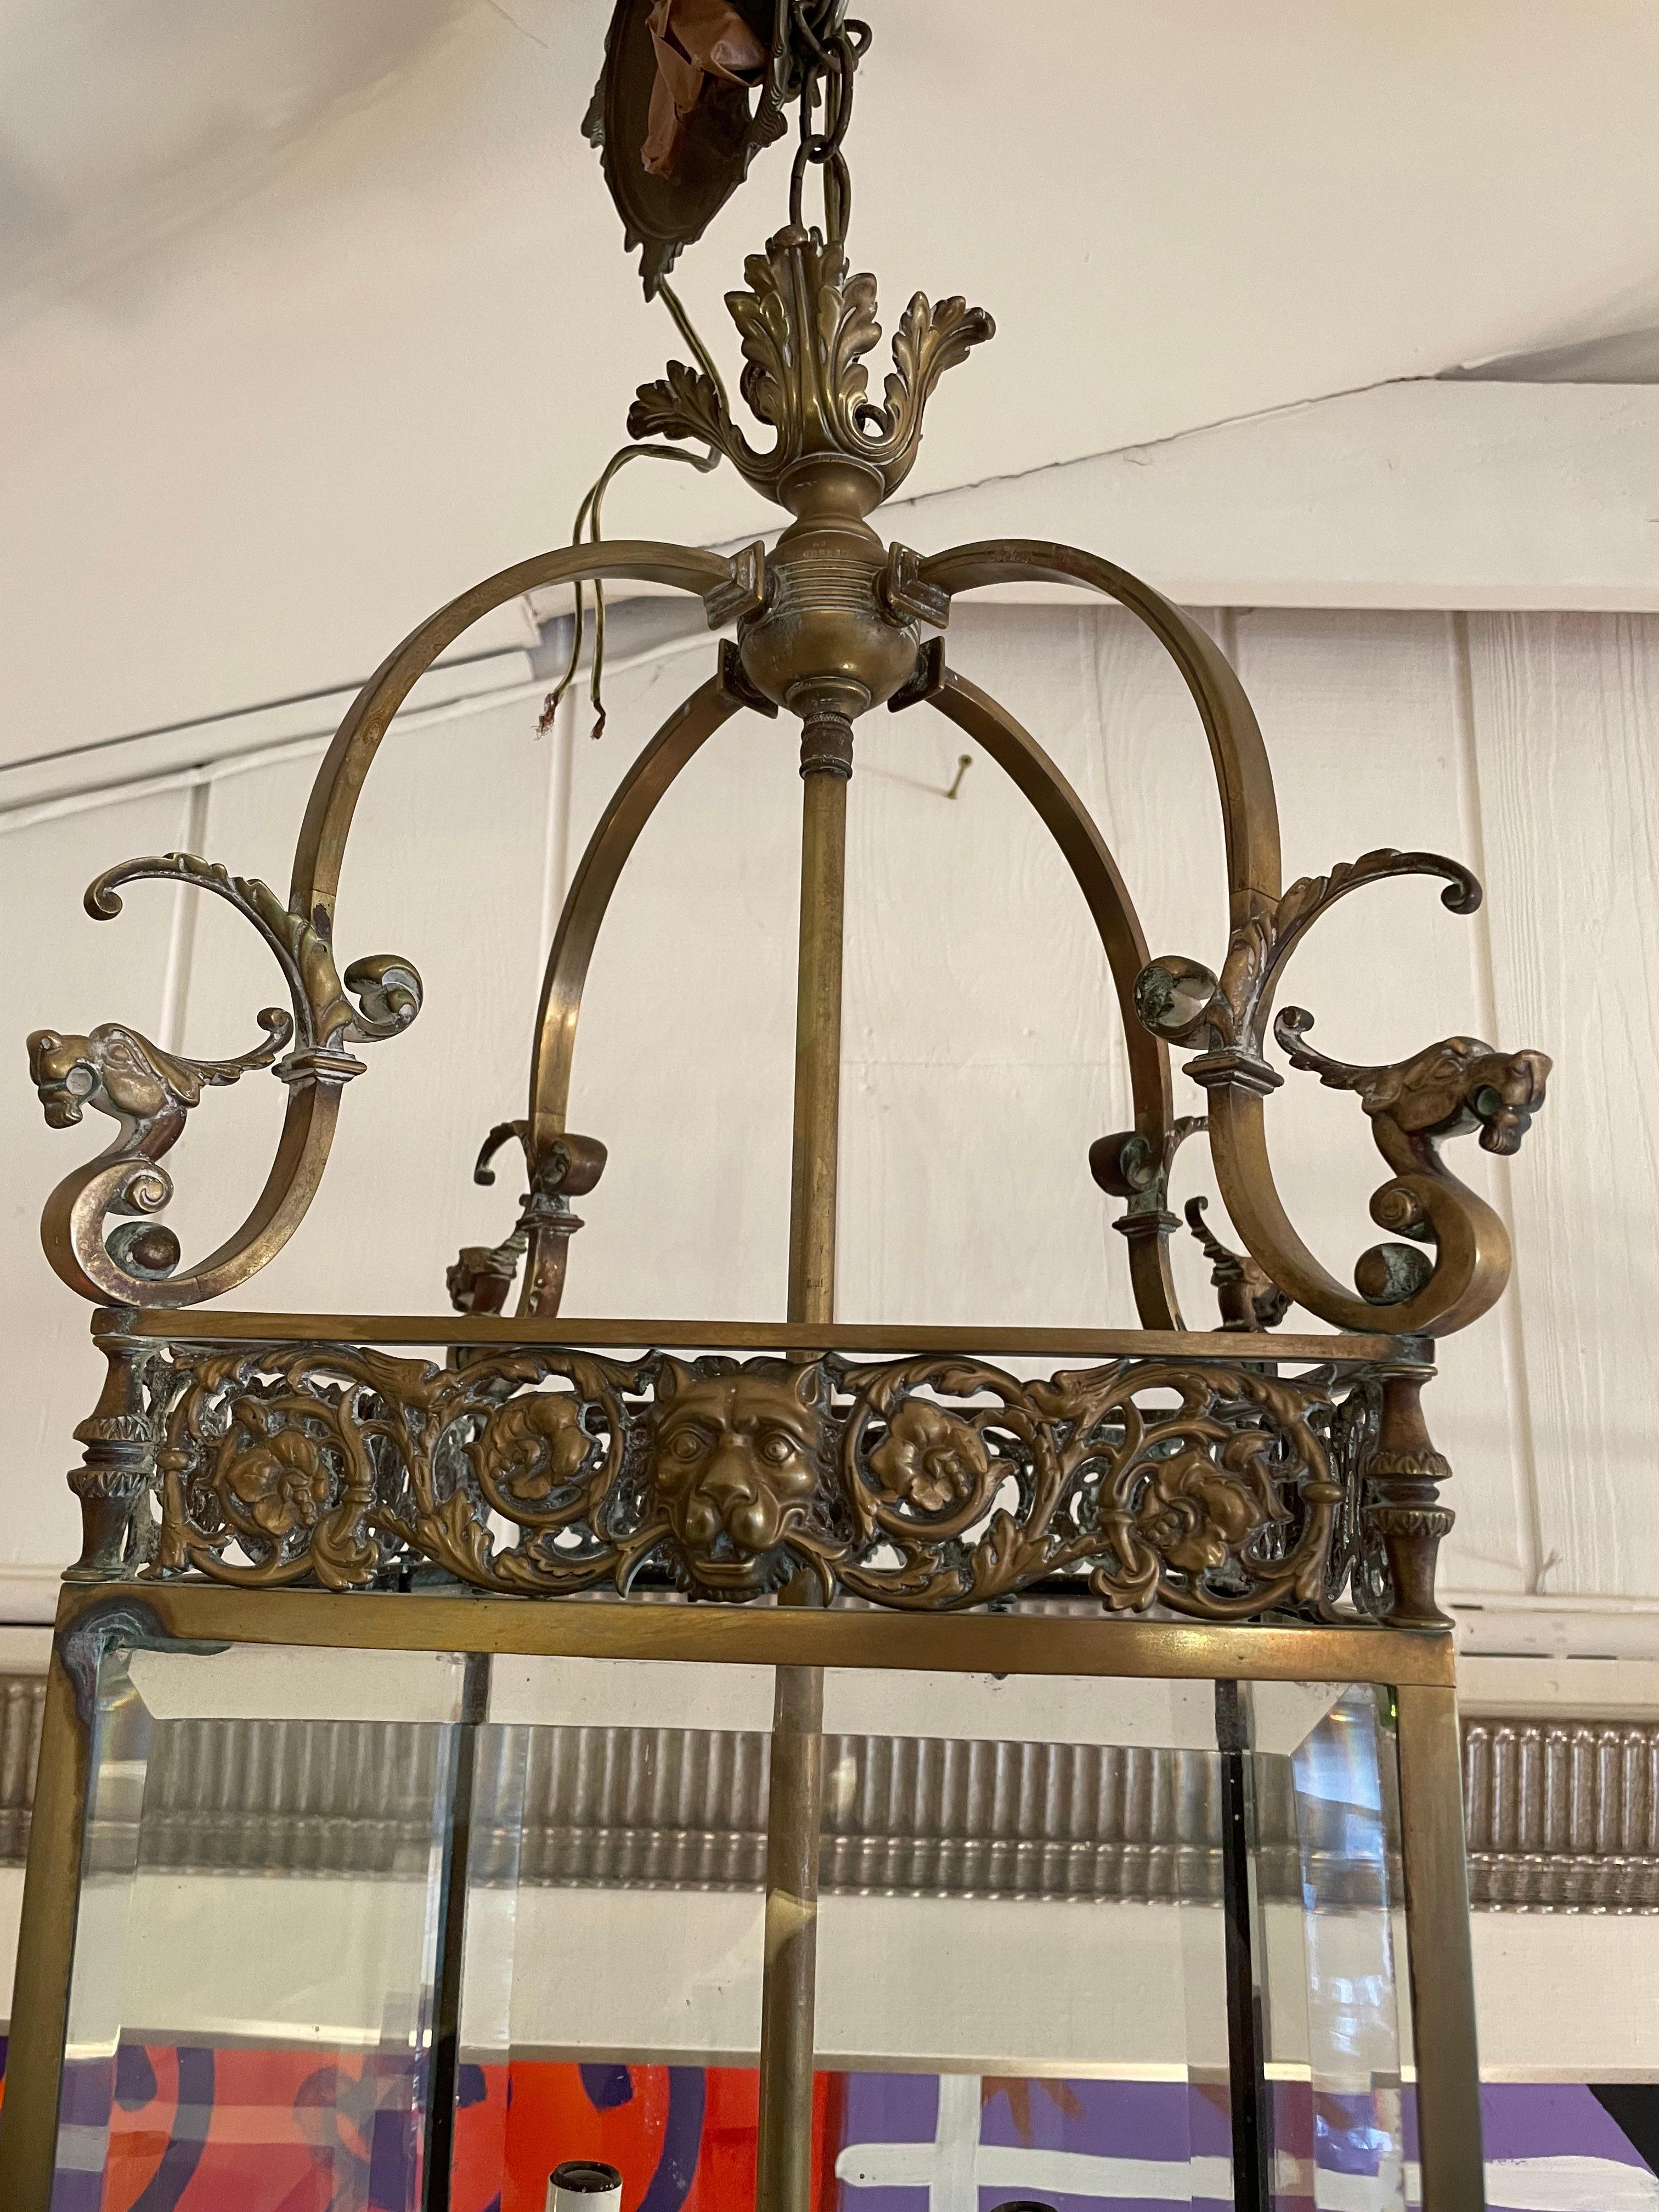 Magnifique lanterne anglaise en bronze et verre biseauté présentant de magnifiques détails tels que des têtes de lion et des griffons.  6